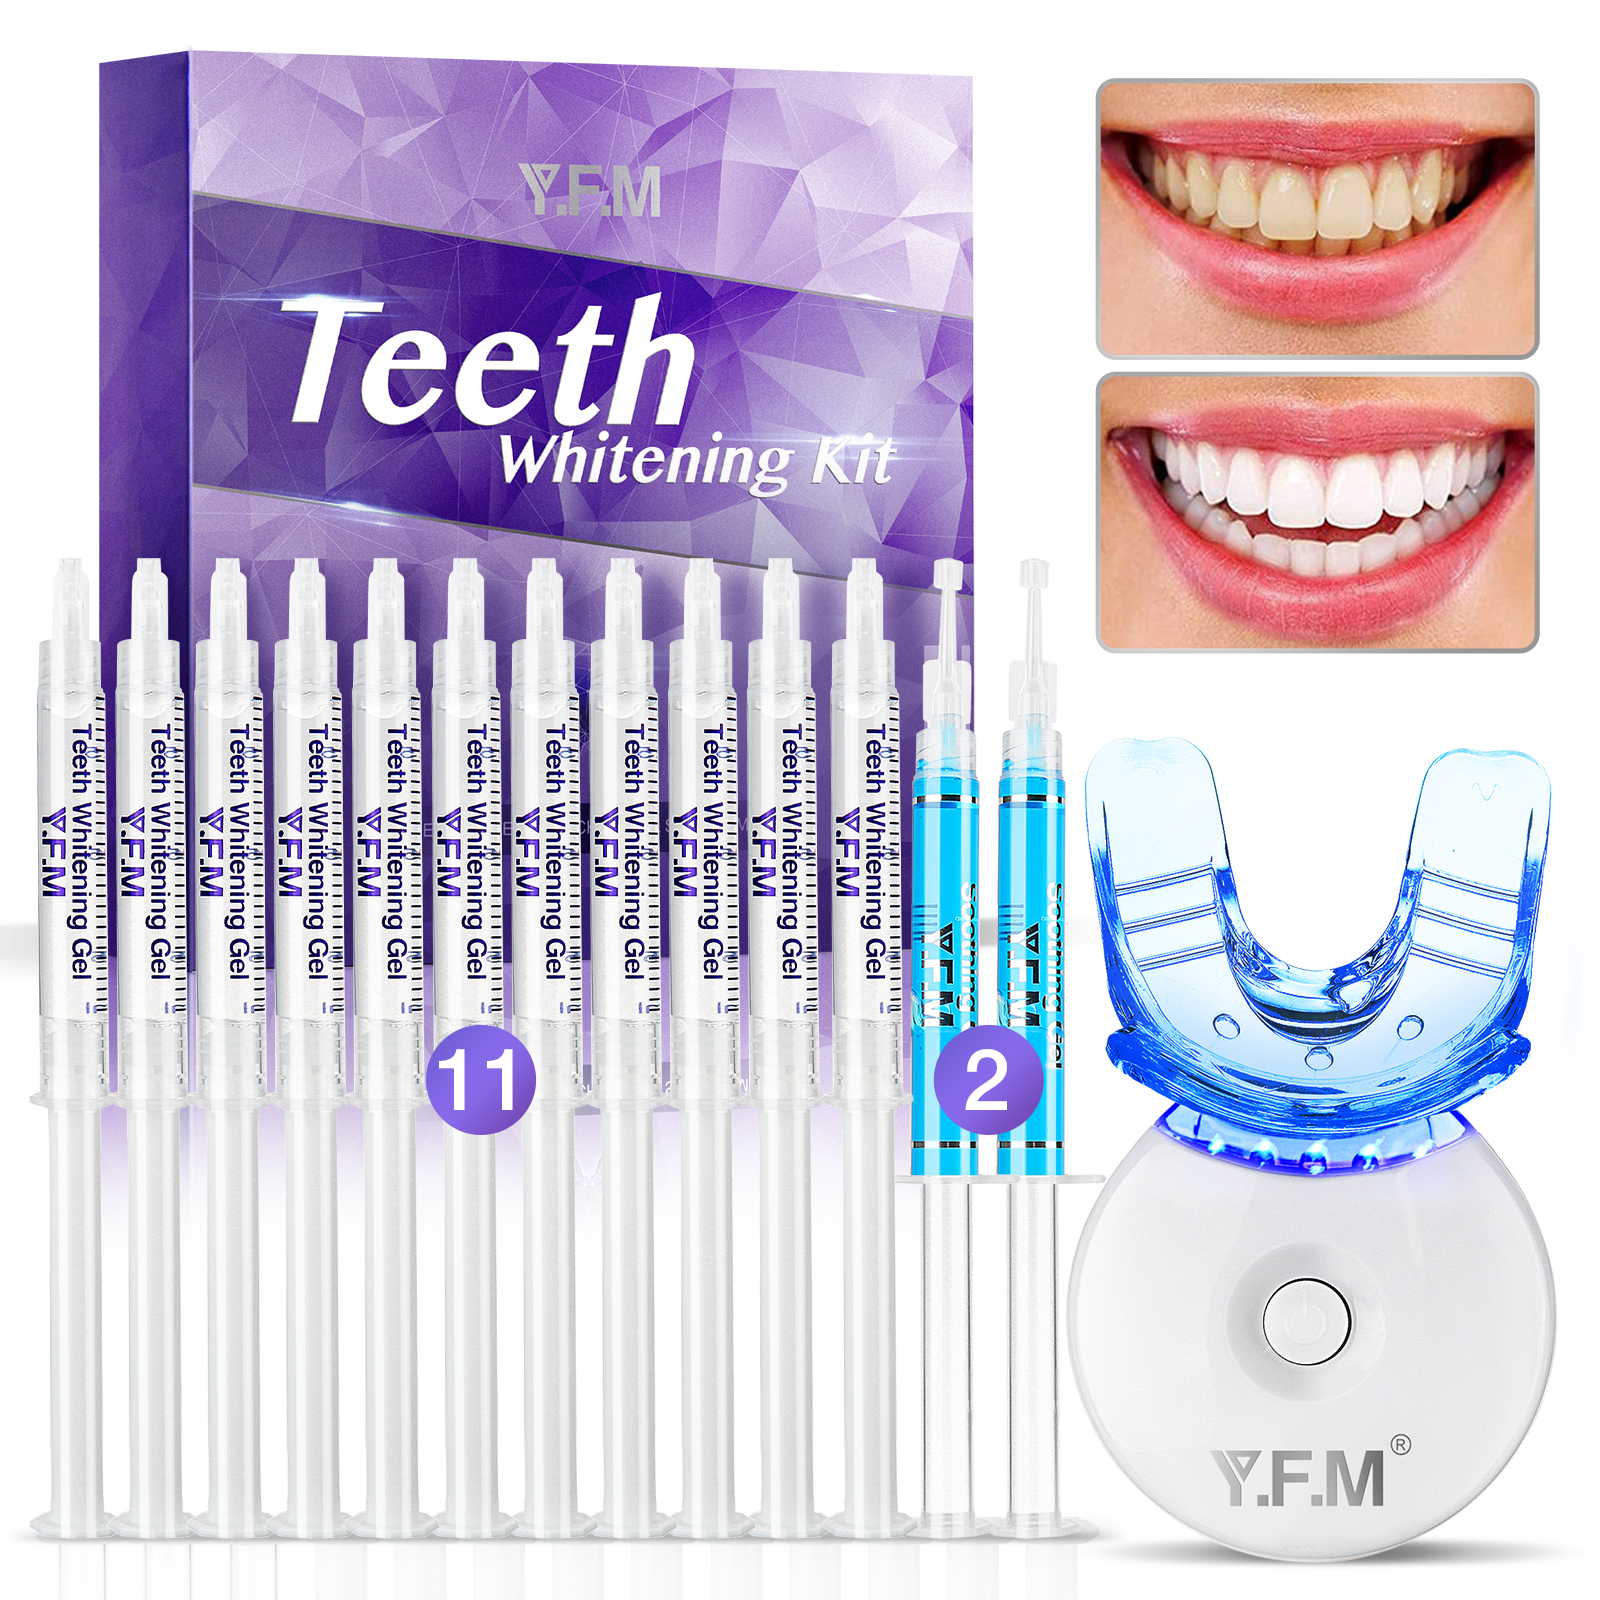 Teeth-Whitening-Gel-Kit-YFM-Teeth-Whitening-Kit-for-Beautiful-Smile-Professional-Teeth-Bleaching-Kit-1900455-6